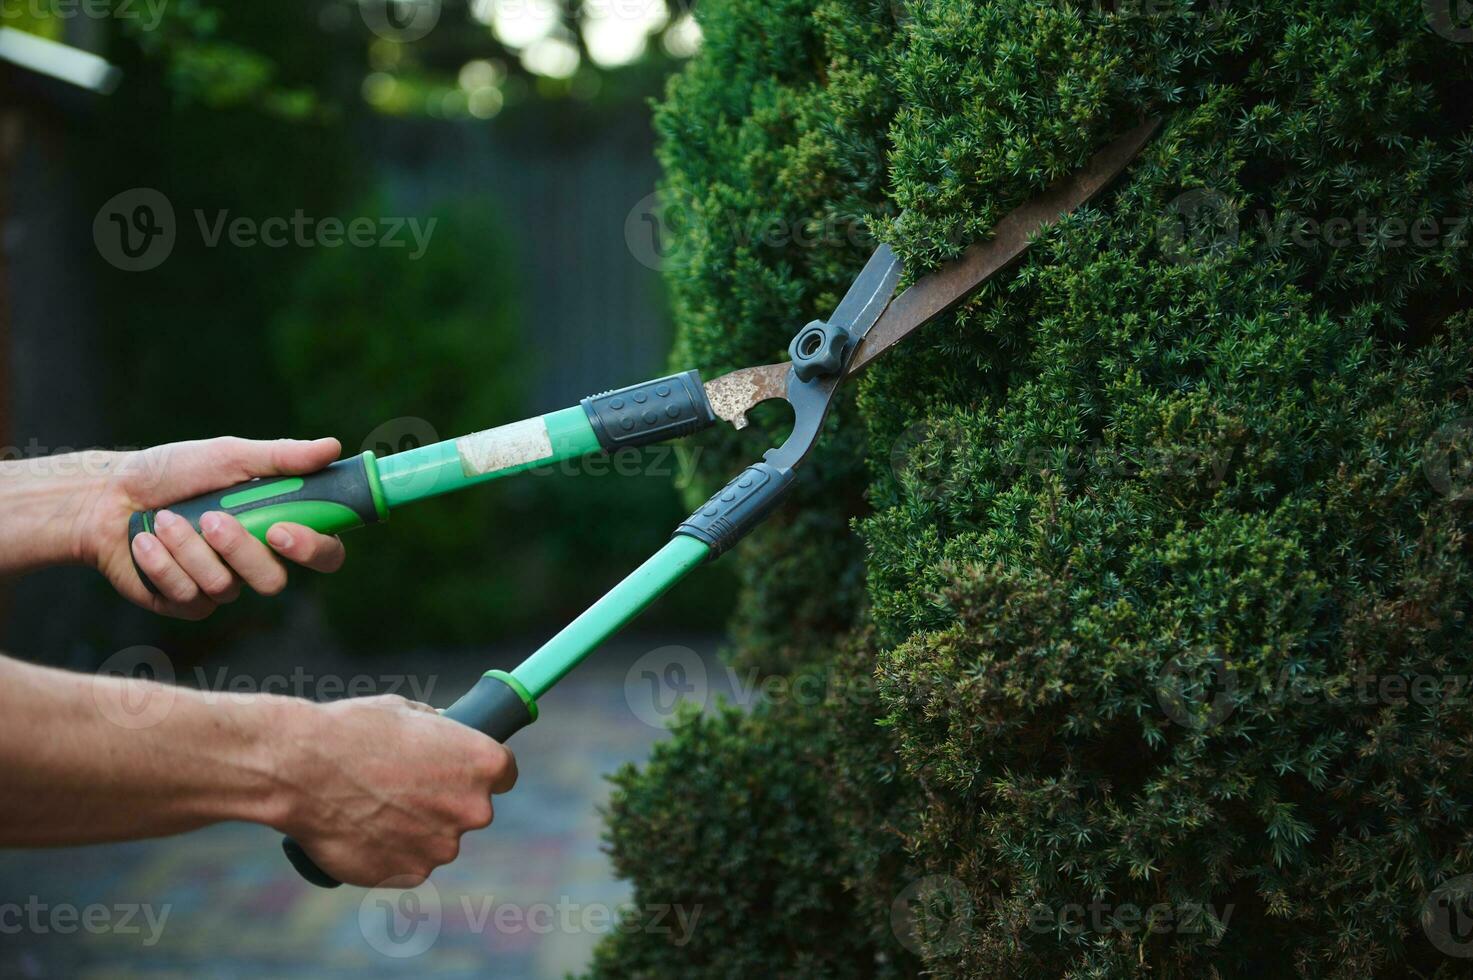 pprofessionell trädgård verktyg, beskärning sax, klippverktyg i händer av trädgårdsmästare landskapsarkitekt skärande häck i bakgård eller trädgård foto